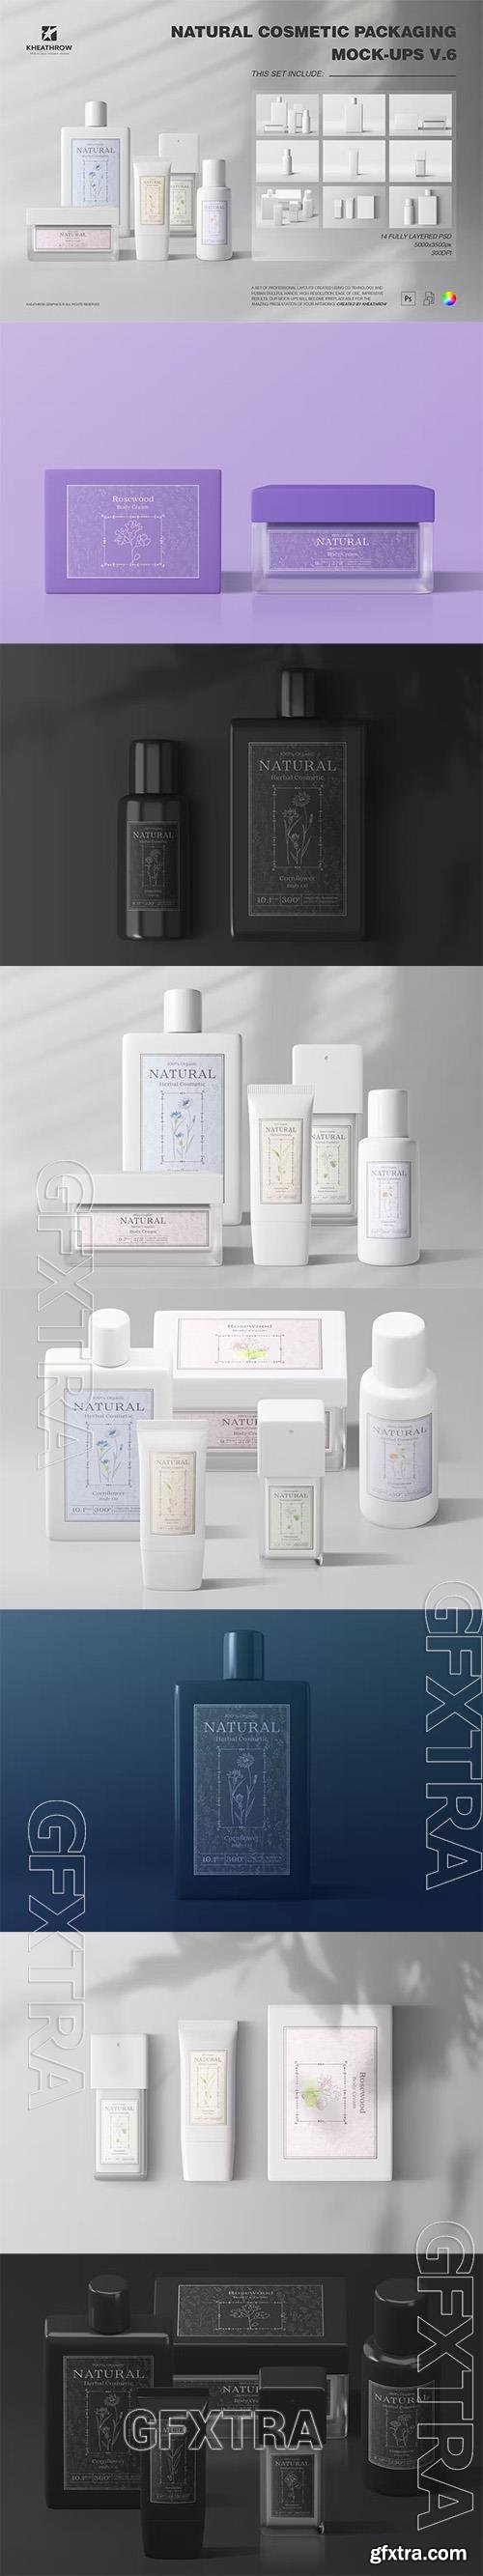 Natural Cosmetic Packaging Mock-Ups Vol.6 2EU9SH7